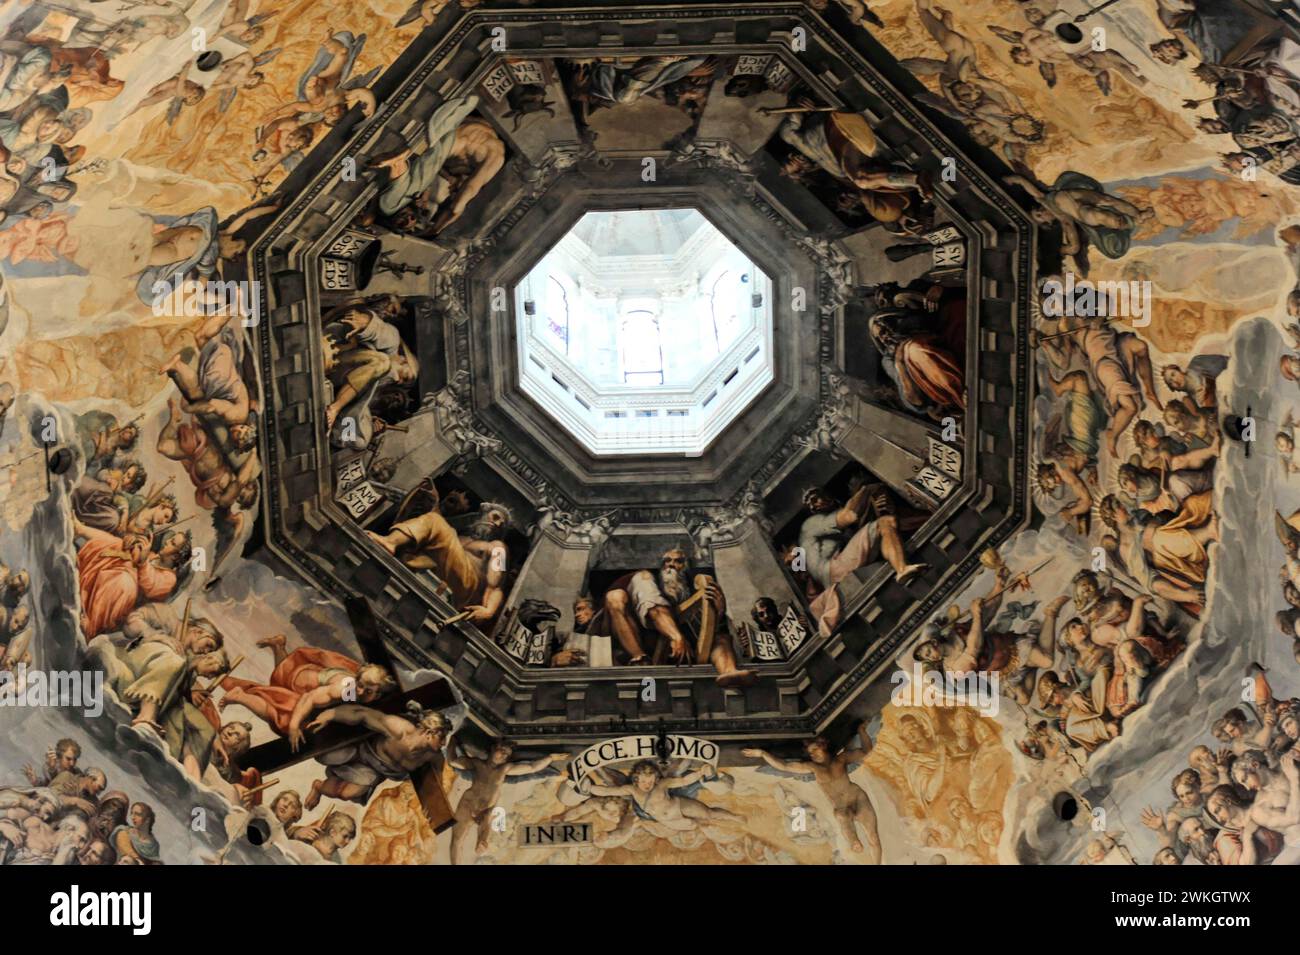 Interior of the Dome of the Basillica di Santa Maria del Fiore, Il Duomo di Firenze, Florence, Italy Stock Photo